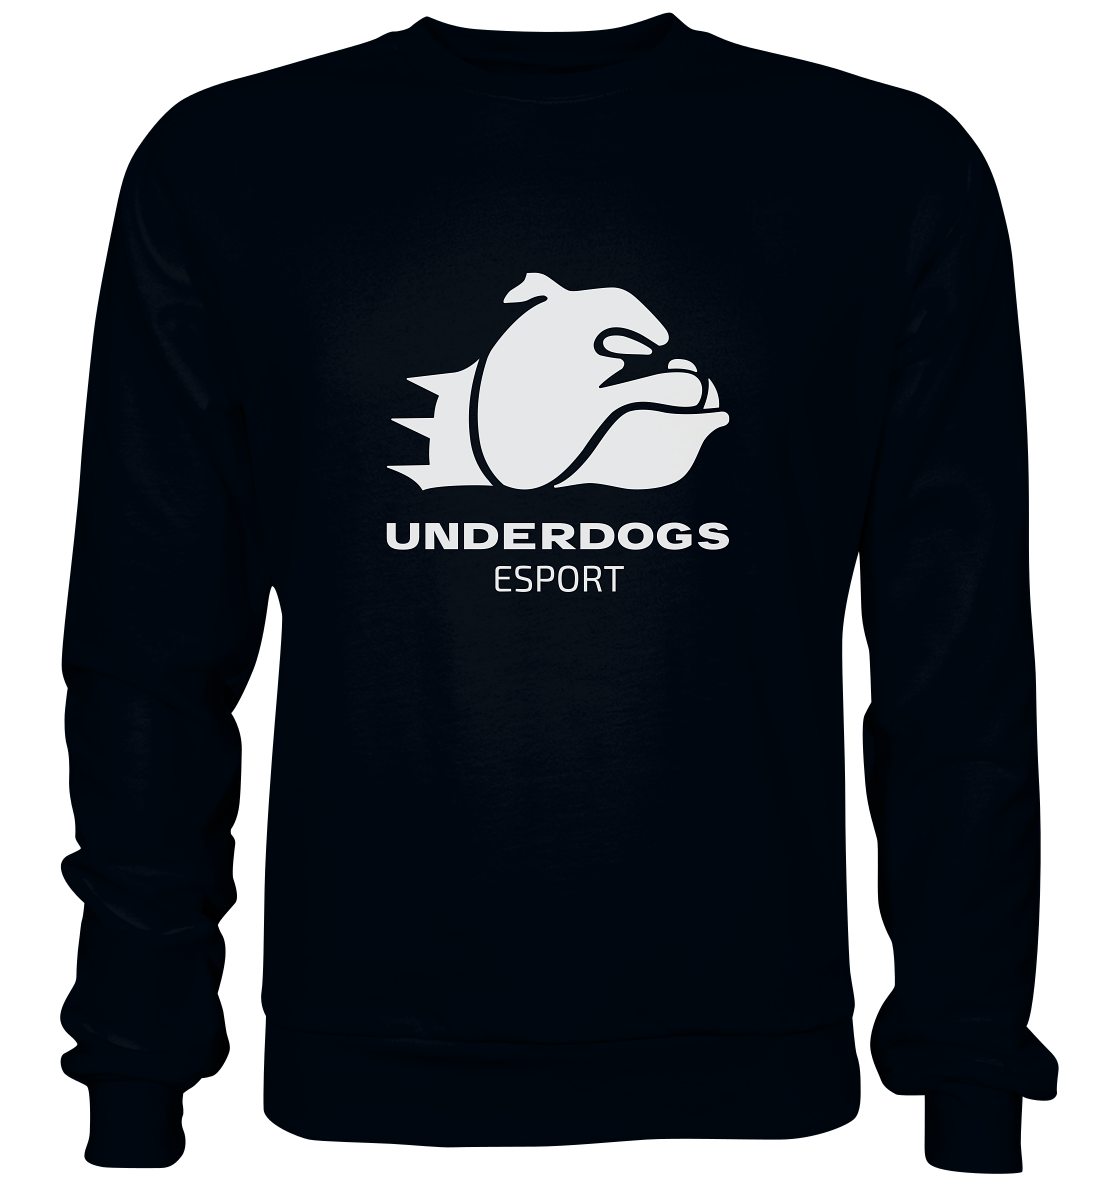 UNDERDOGS ESPORT - Basic Sweatshirt